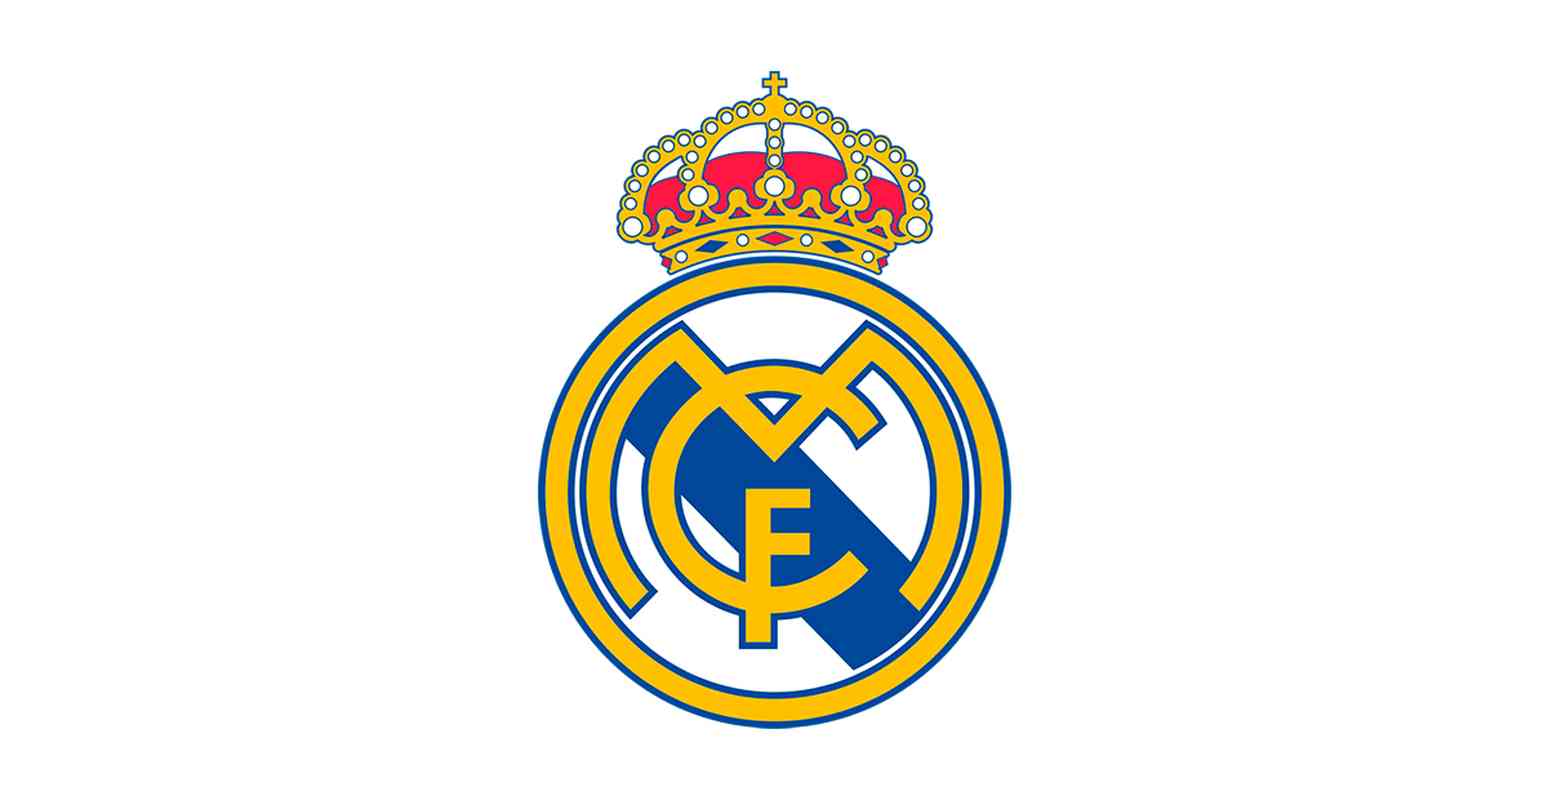 Real Madrid, da Espanha, teve trs gols: Marco Asensio (1), Vinicius Jnior (1), Tchouamni (1) 